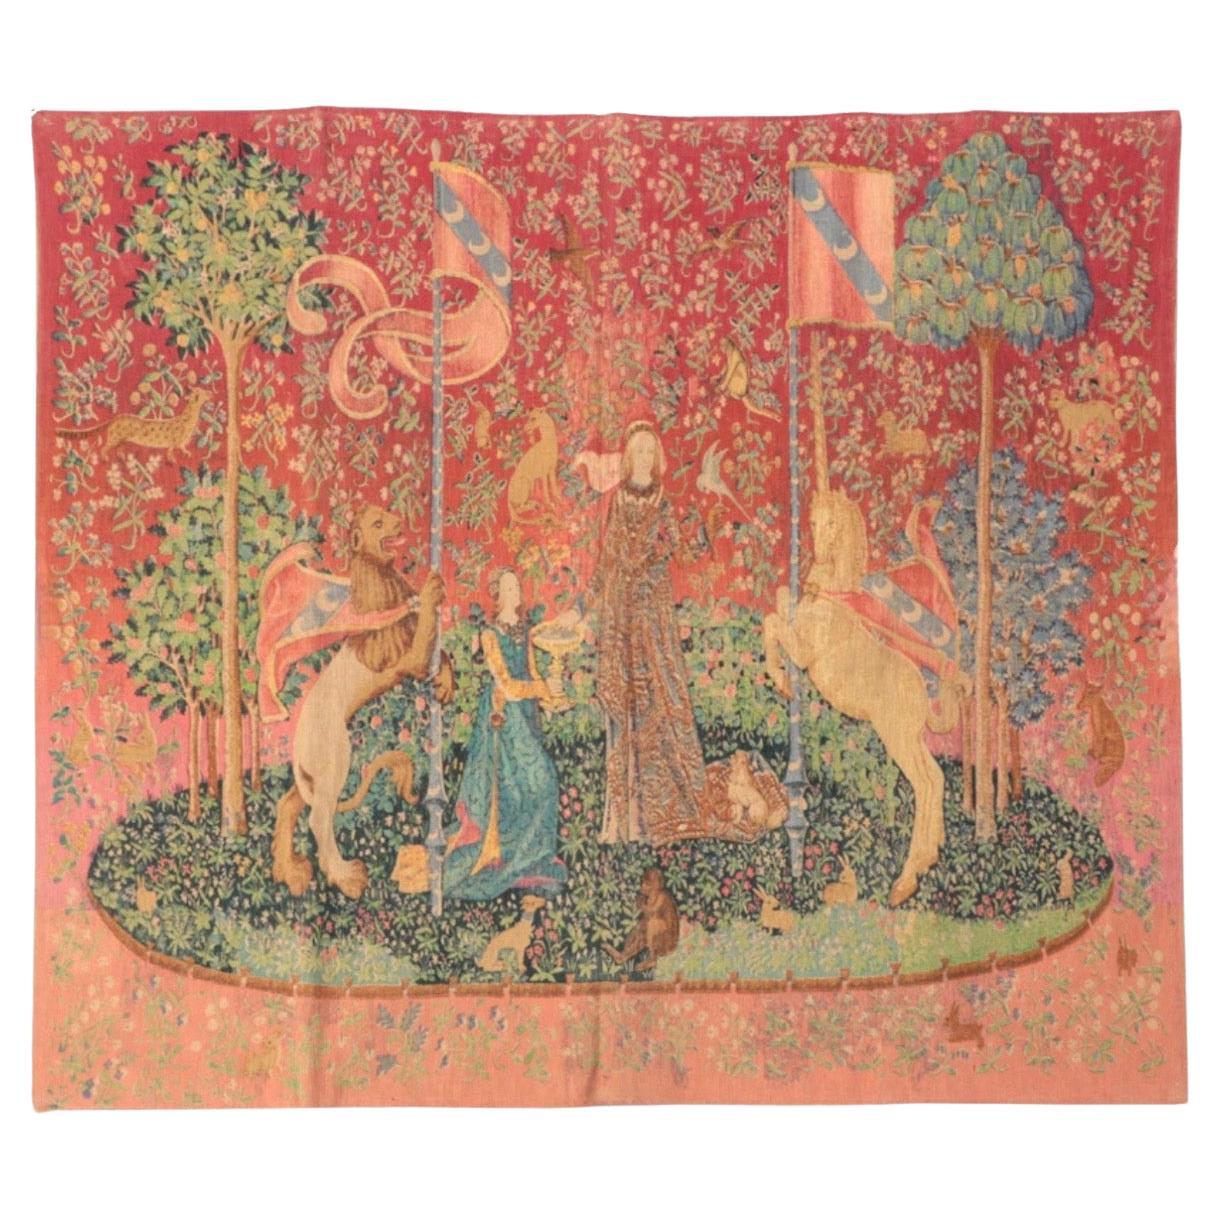 Editions d’Art de Rambouillet Printed Tapestry after "La Dame à la licorne" For Sale